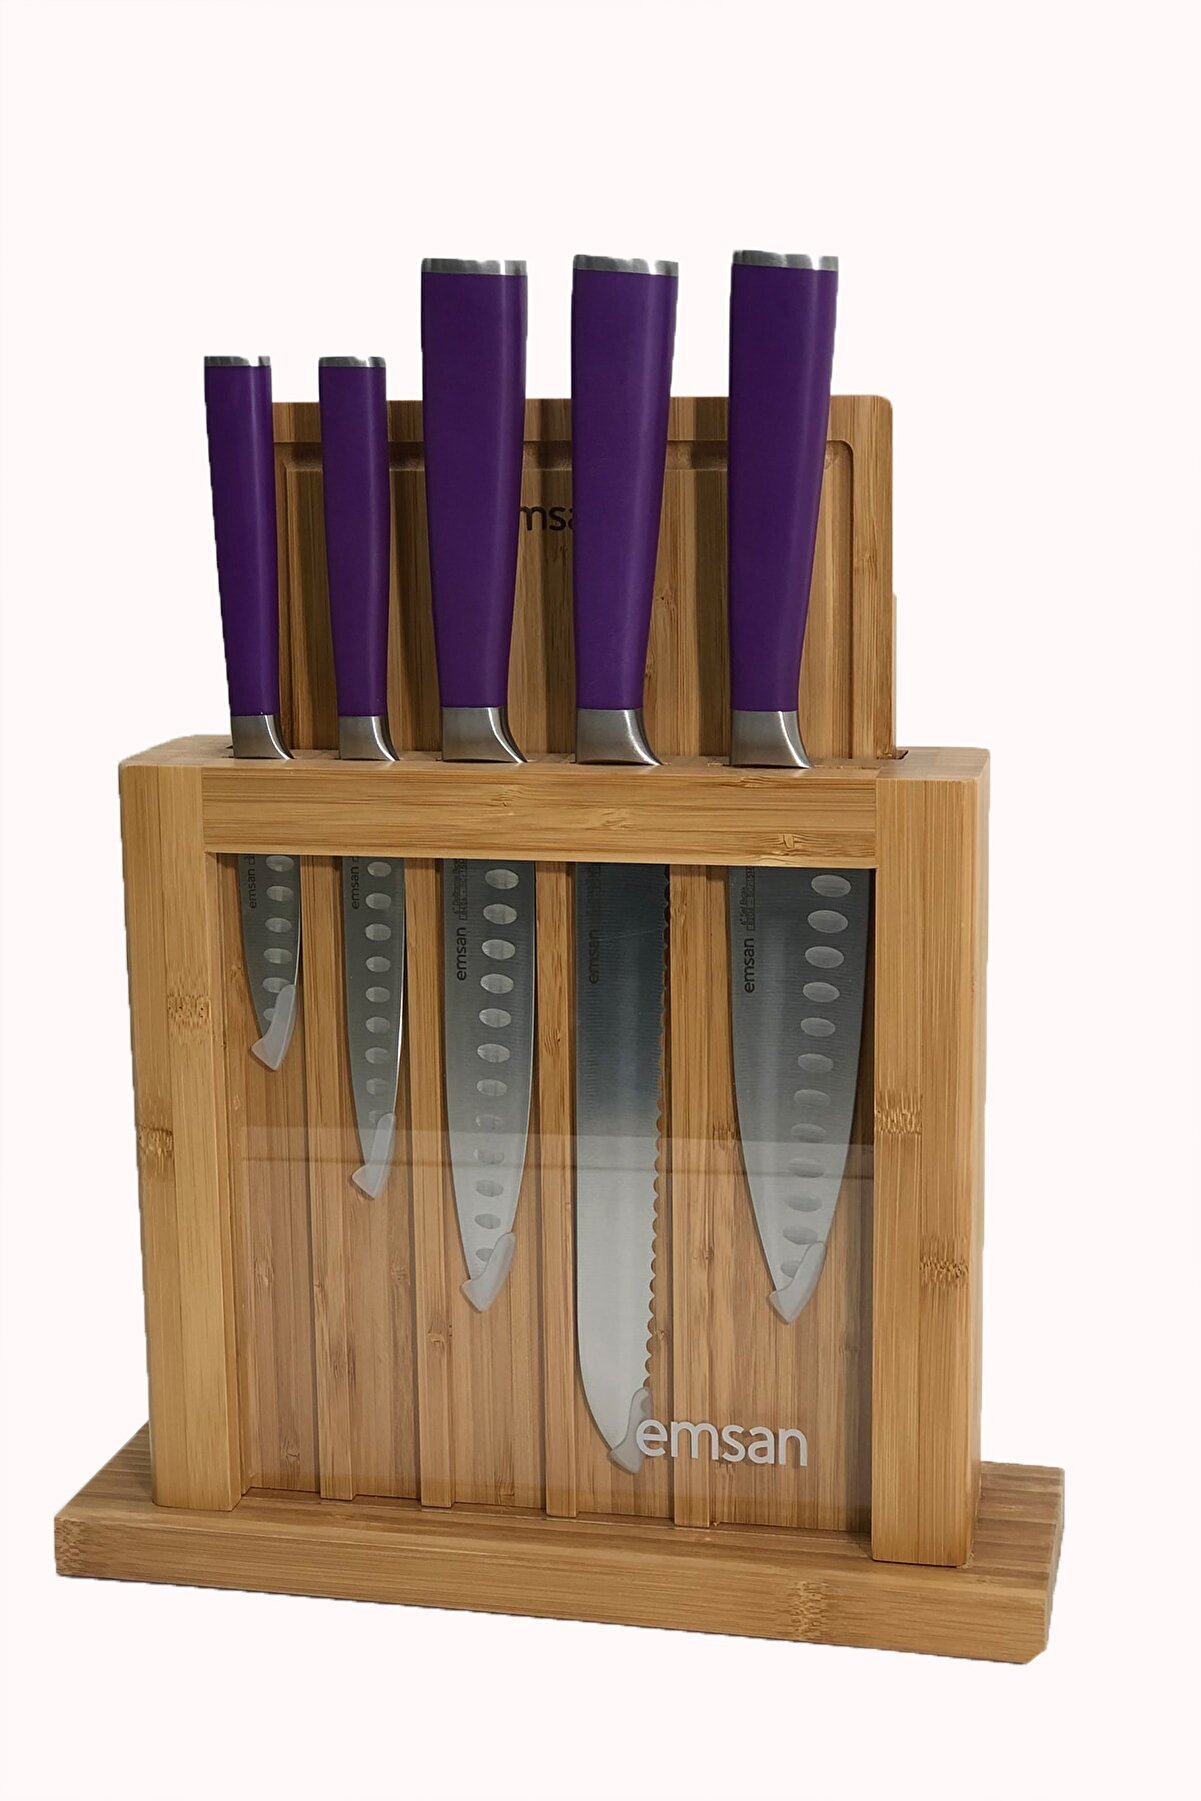 ست چاقوی آشپزخانه 7 پارچه امسان مدل Emsan Matriks Mor